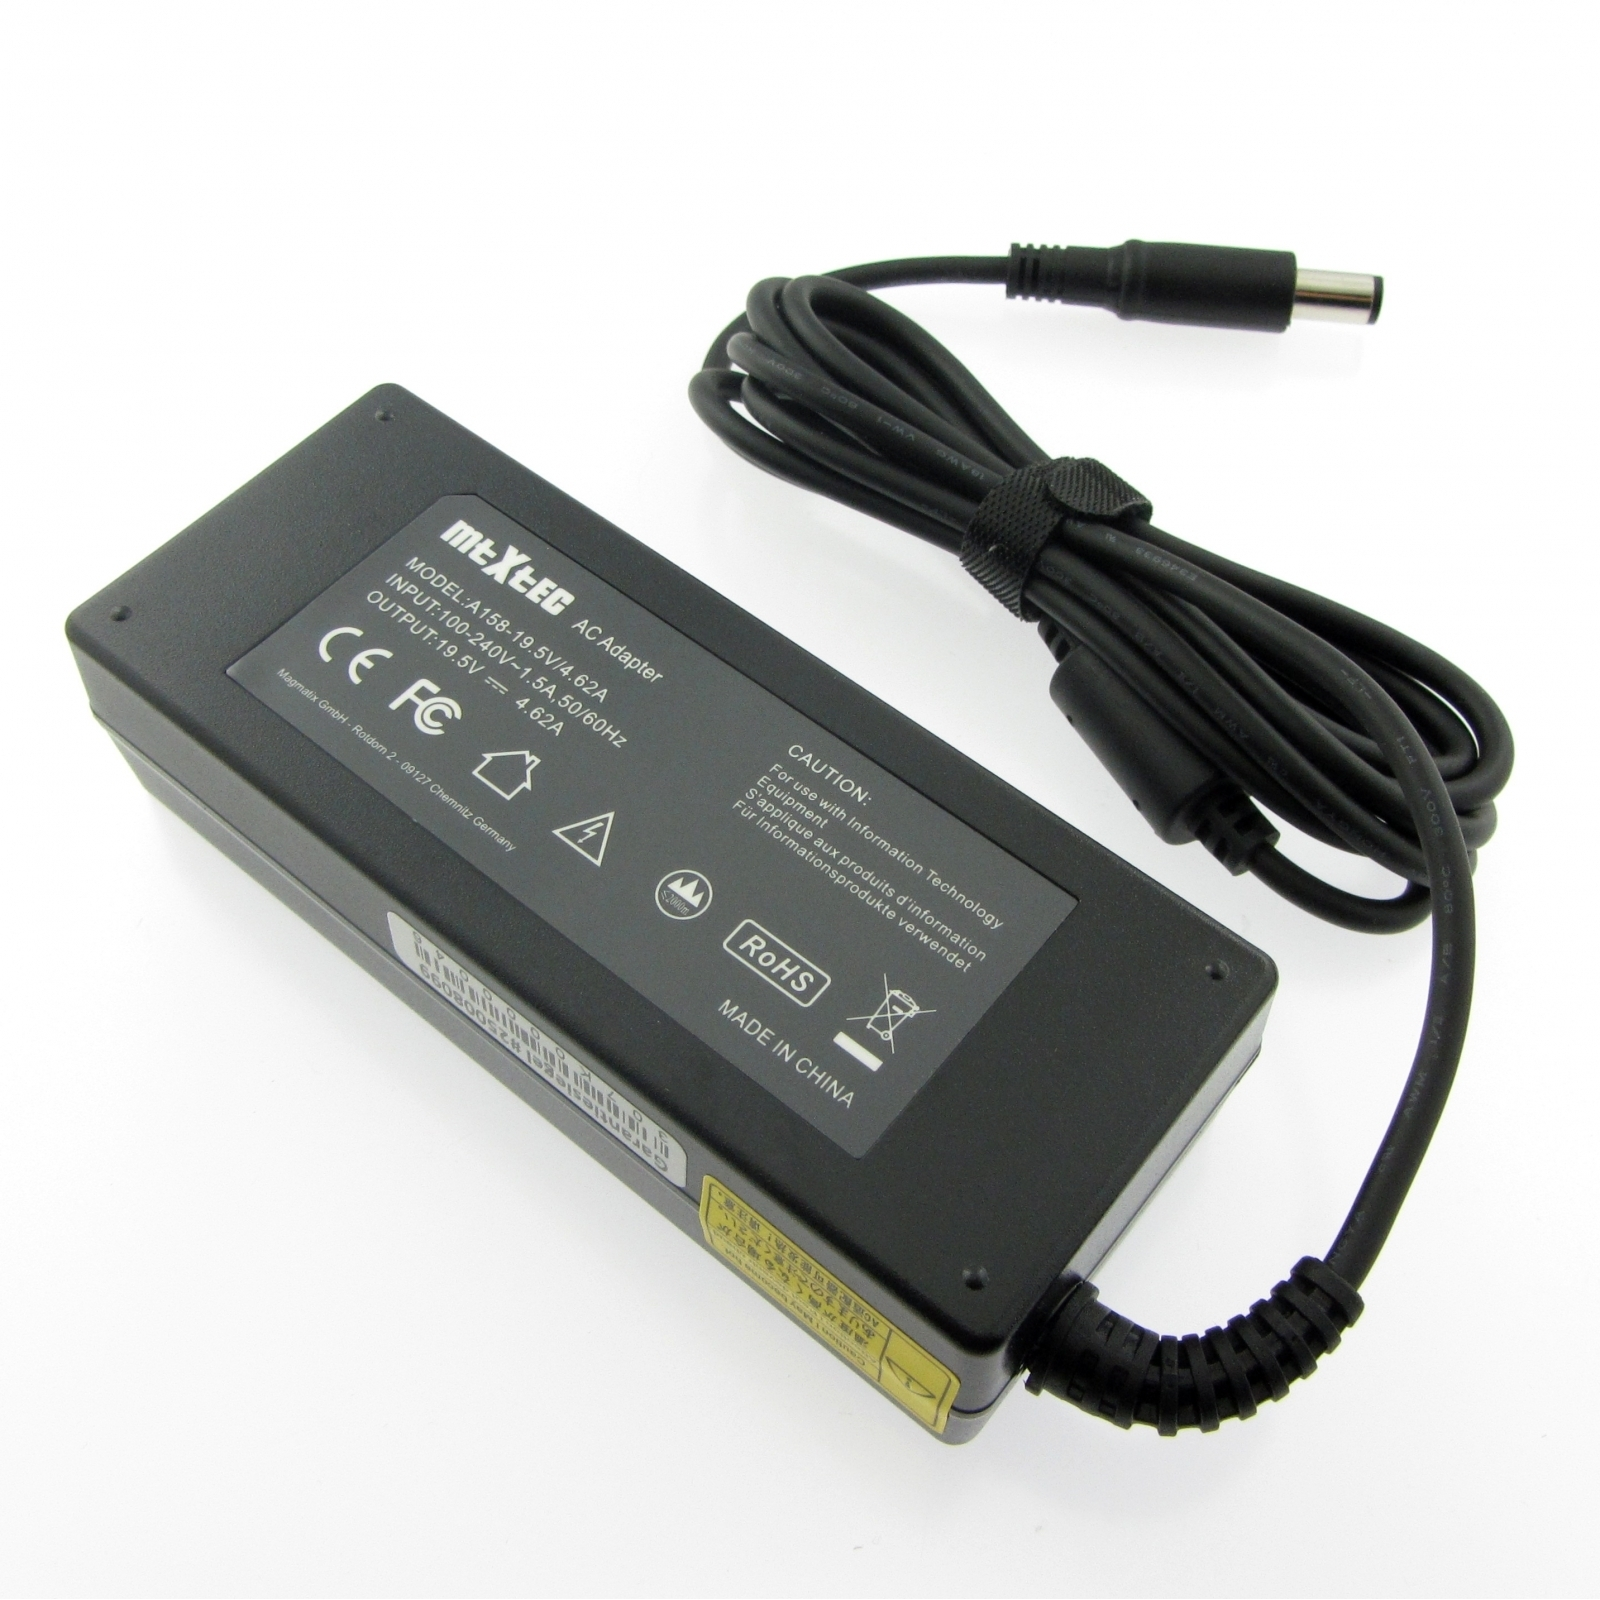 MTXTEC (N5010), mm 15 x rund für 90 Notebook-Netzteil 90W, 4.62A Watt Inspiron 7.4 19.5V, DELL Netzteil, Stecker 5.5